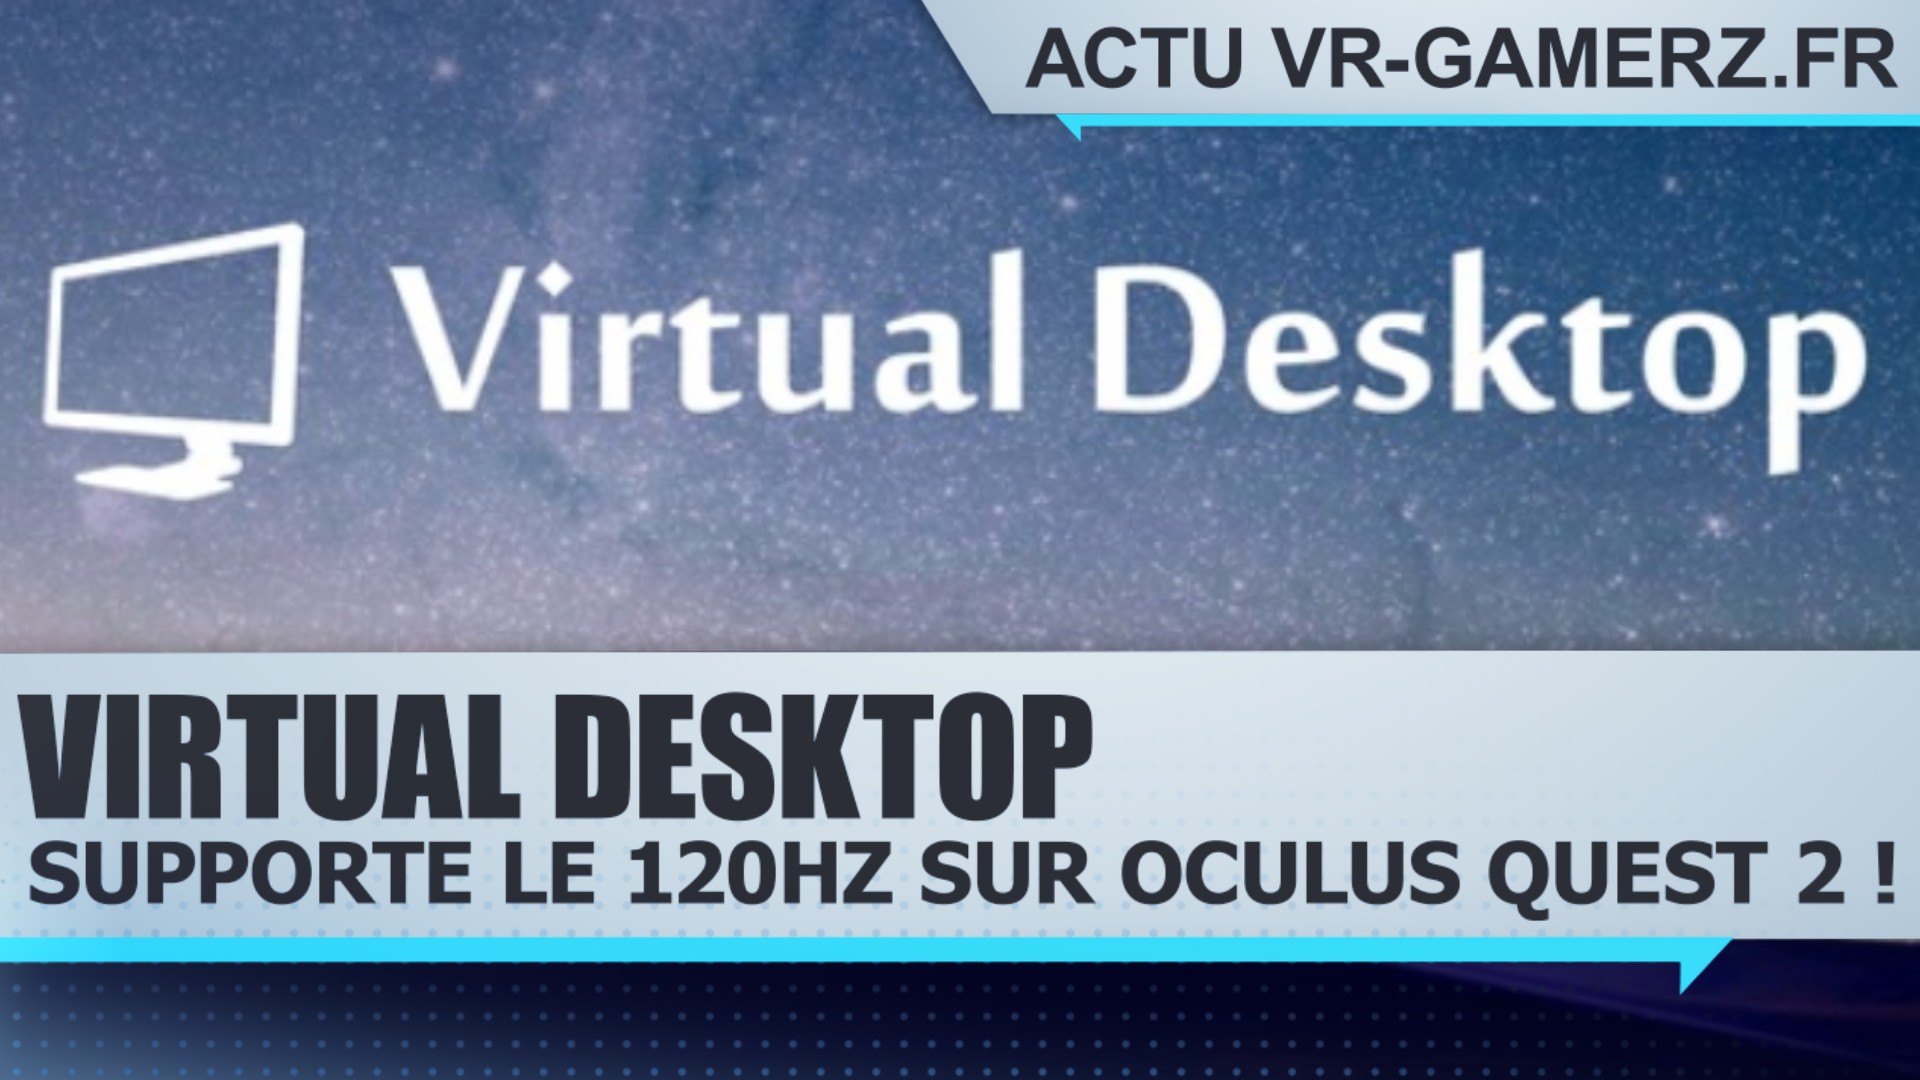 Virtual desktop supporte le 120Hz sur Oculus quest 2 !